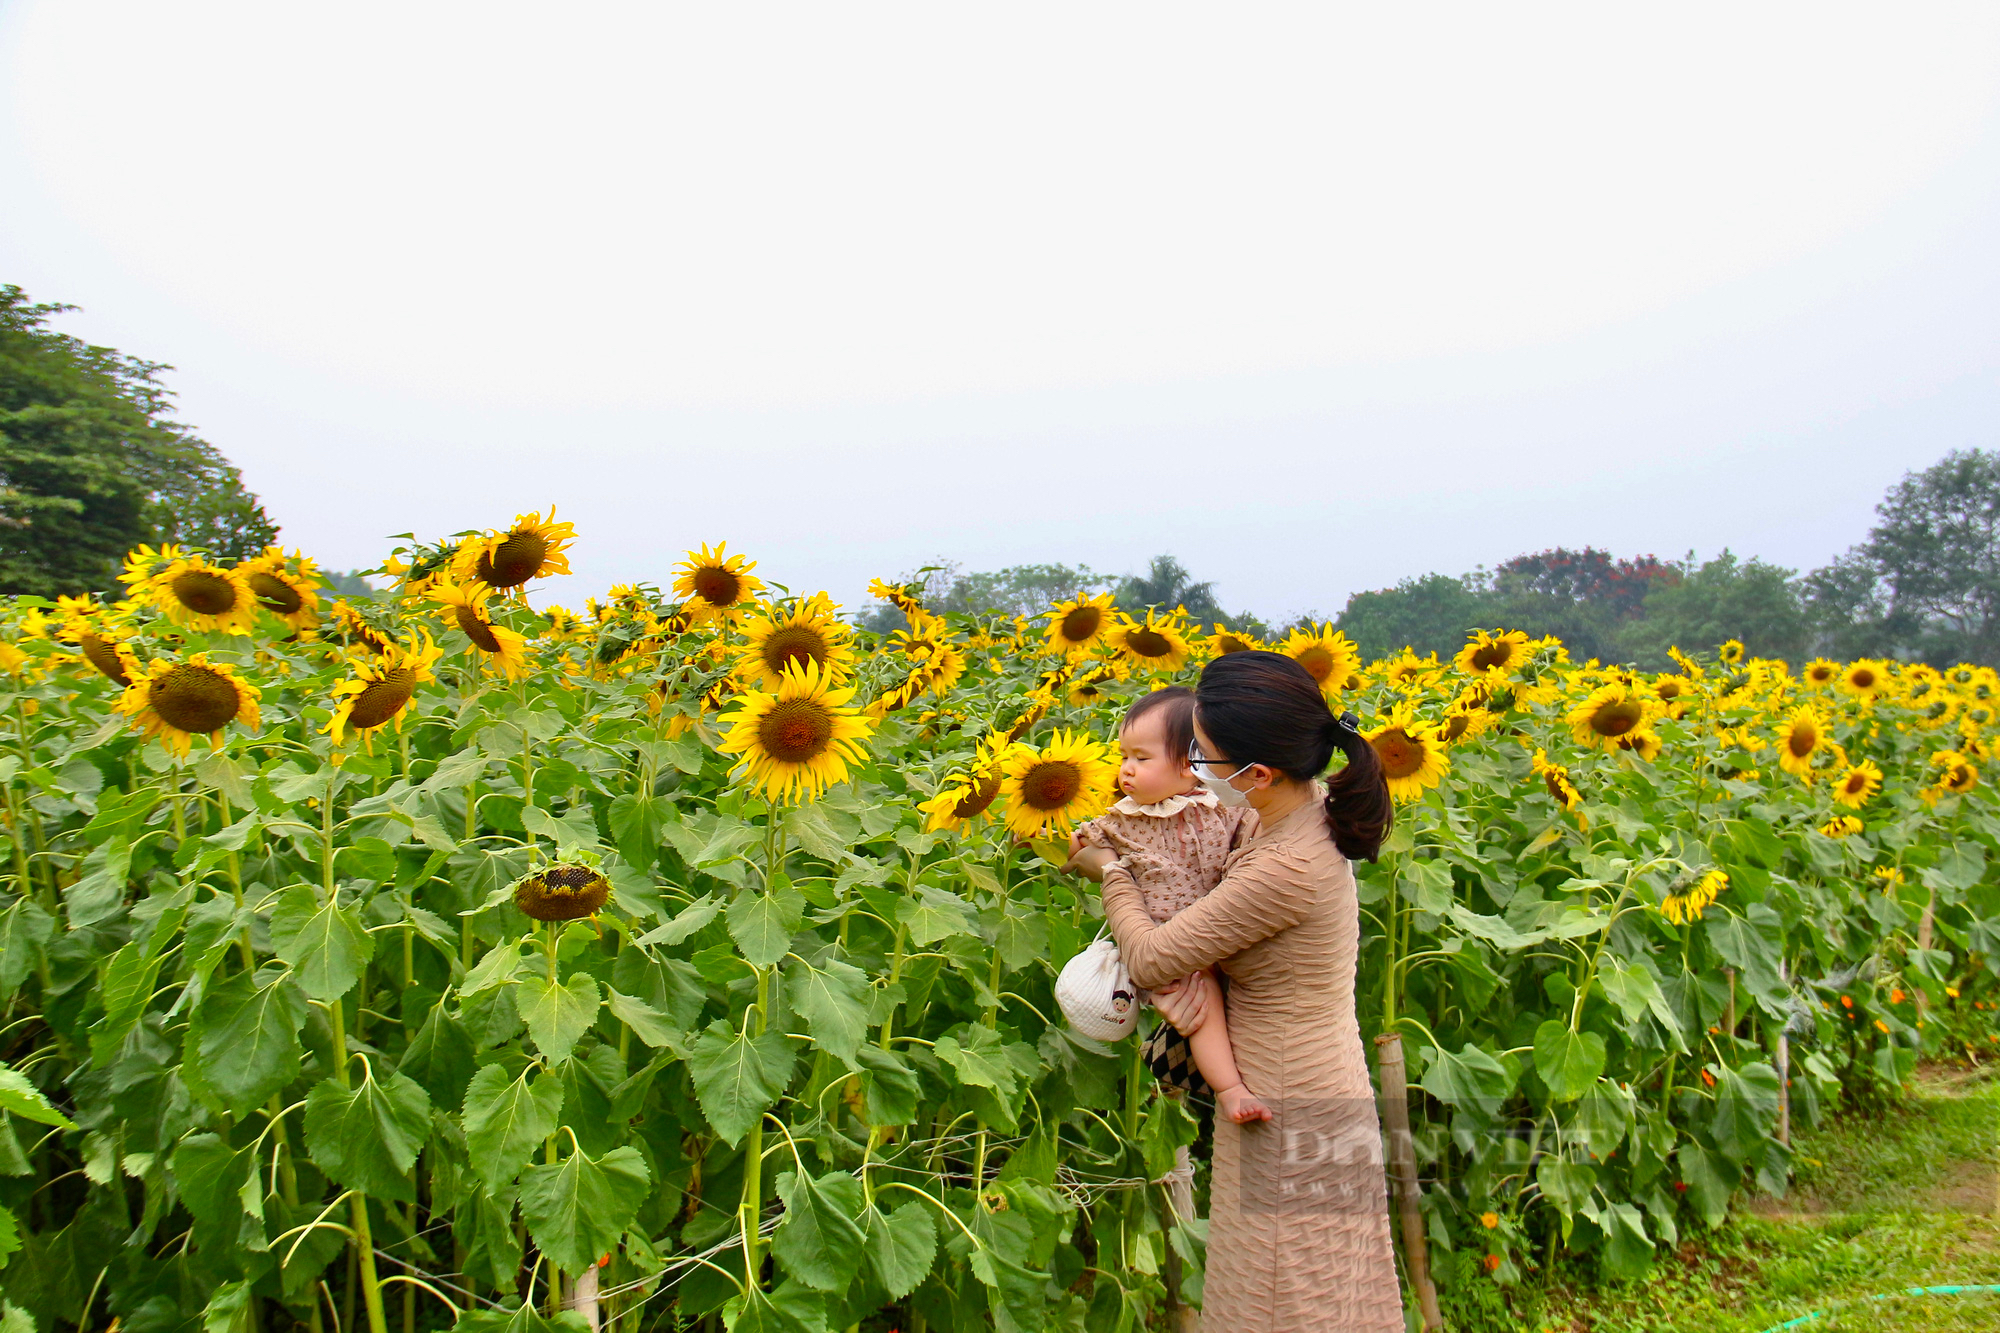 Mê mẩn trước cánh đồng hoa hướng dương nở rực sắc vàng "hút" giới trẻ ở Hà Nội - Ảnh 8.